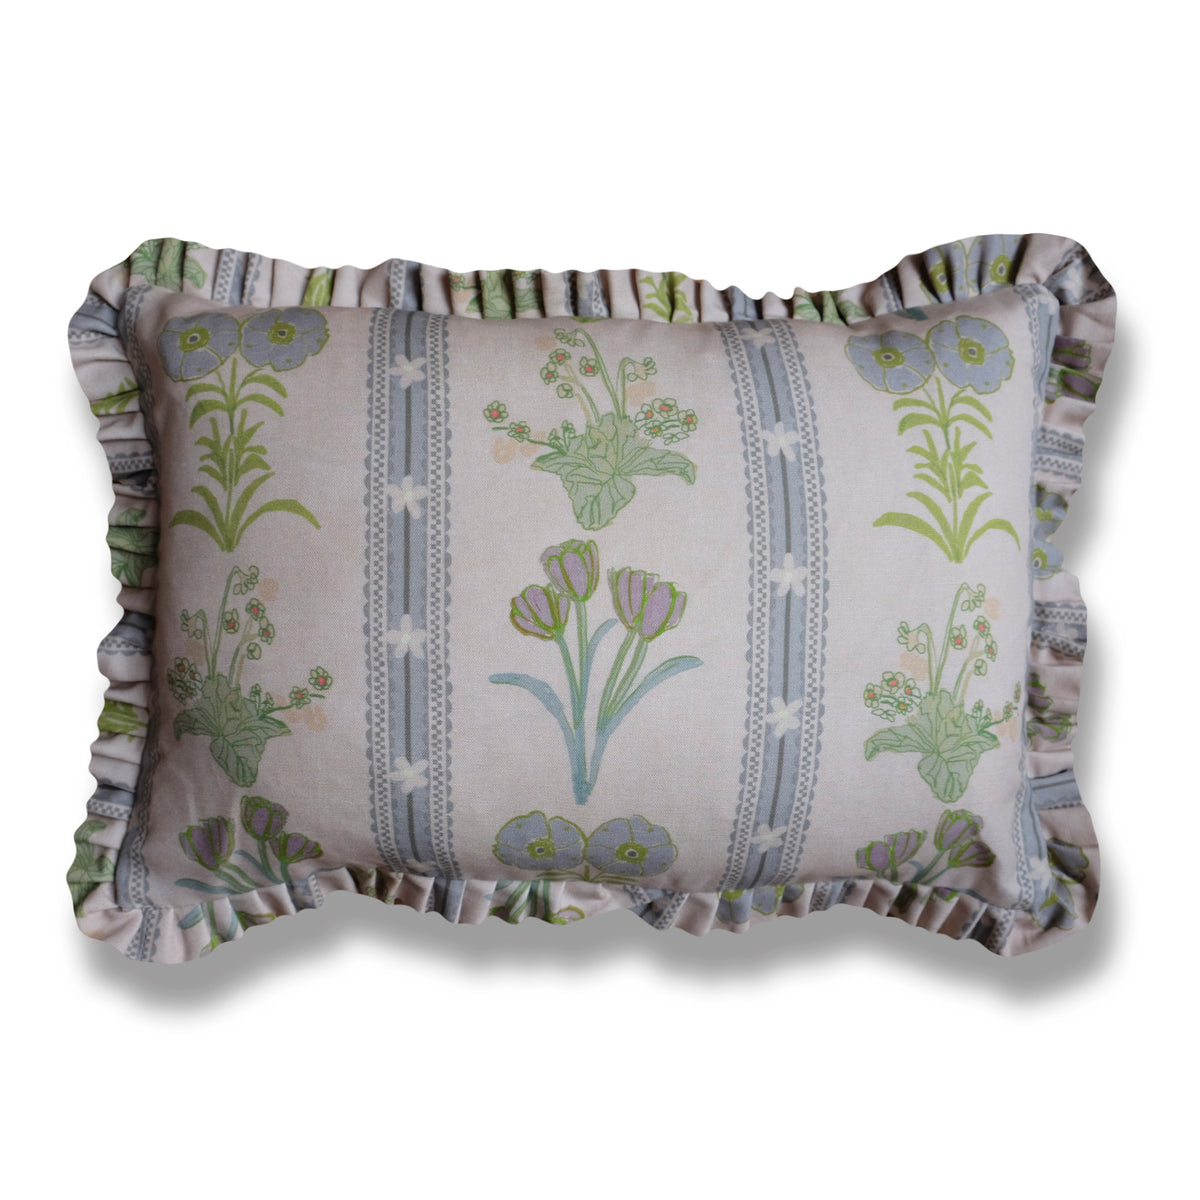 *New* Virginia - Linen Ruffle Pillow - 12 x 18"